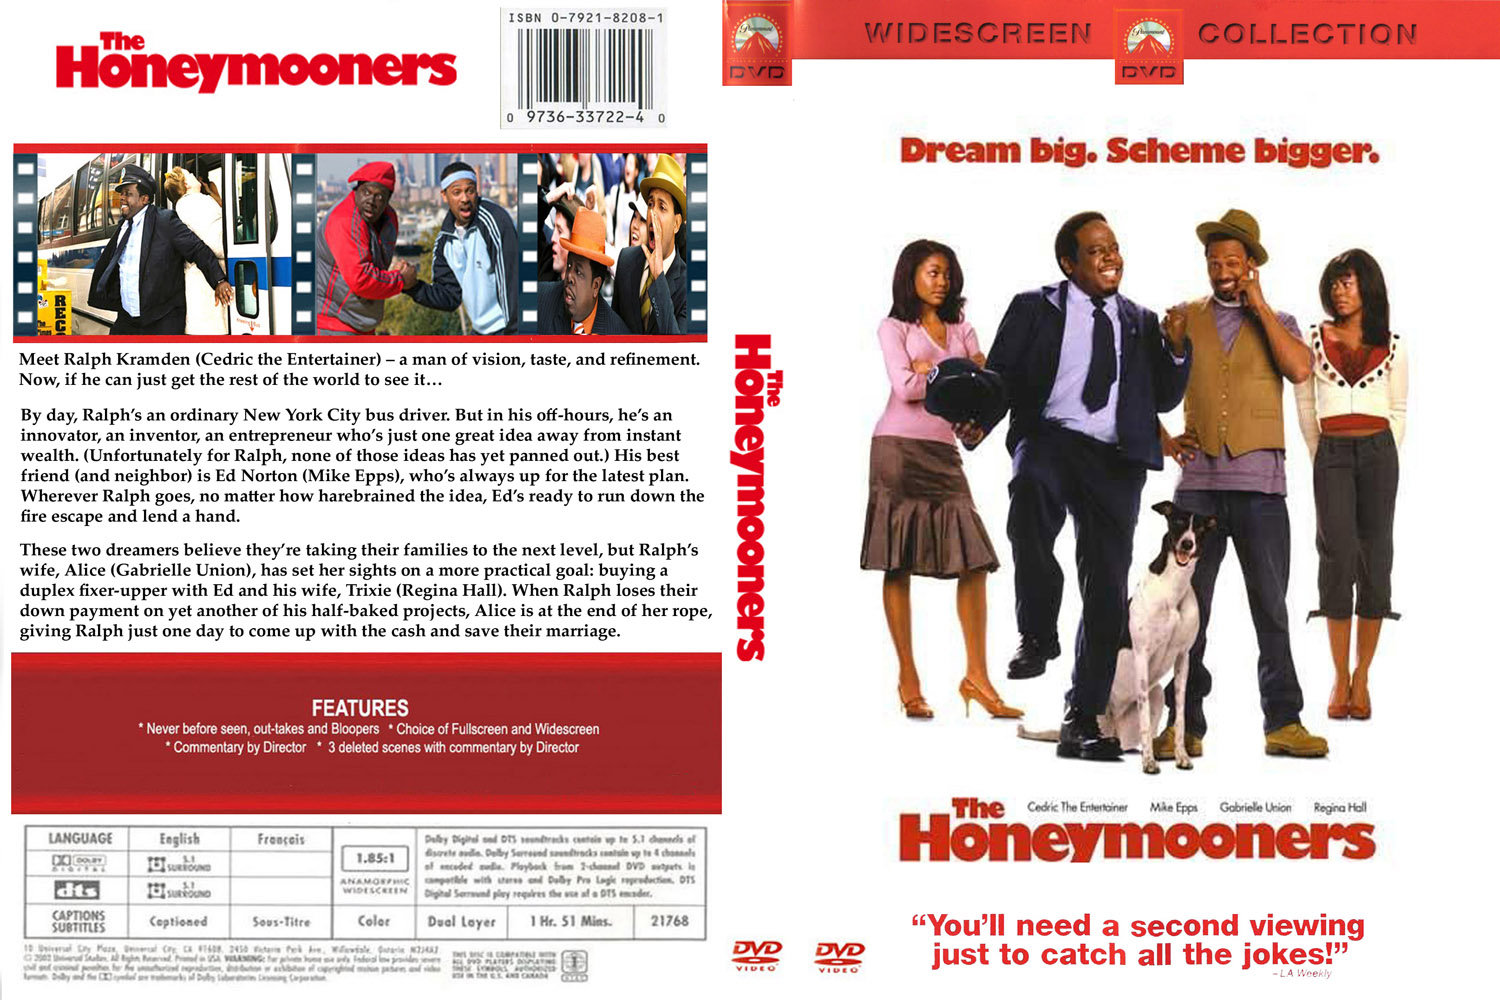 The Honeymooners 2005